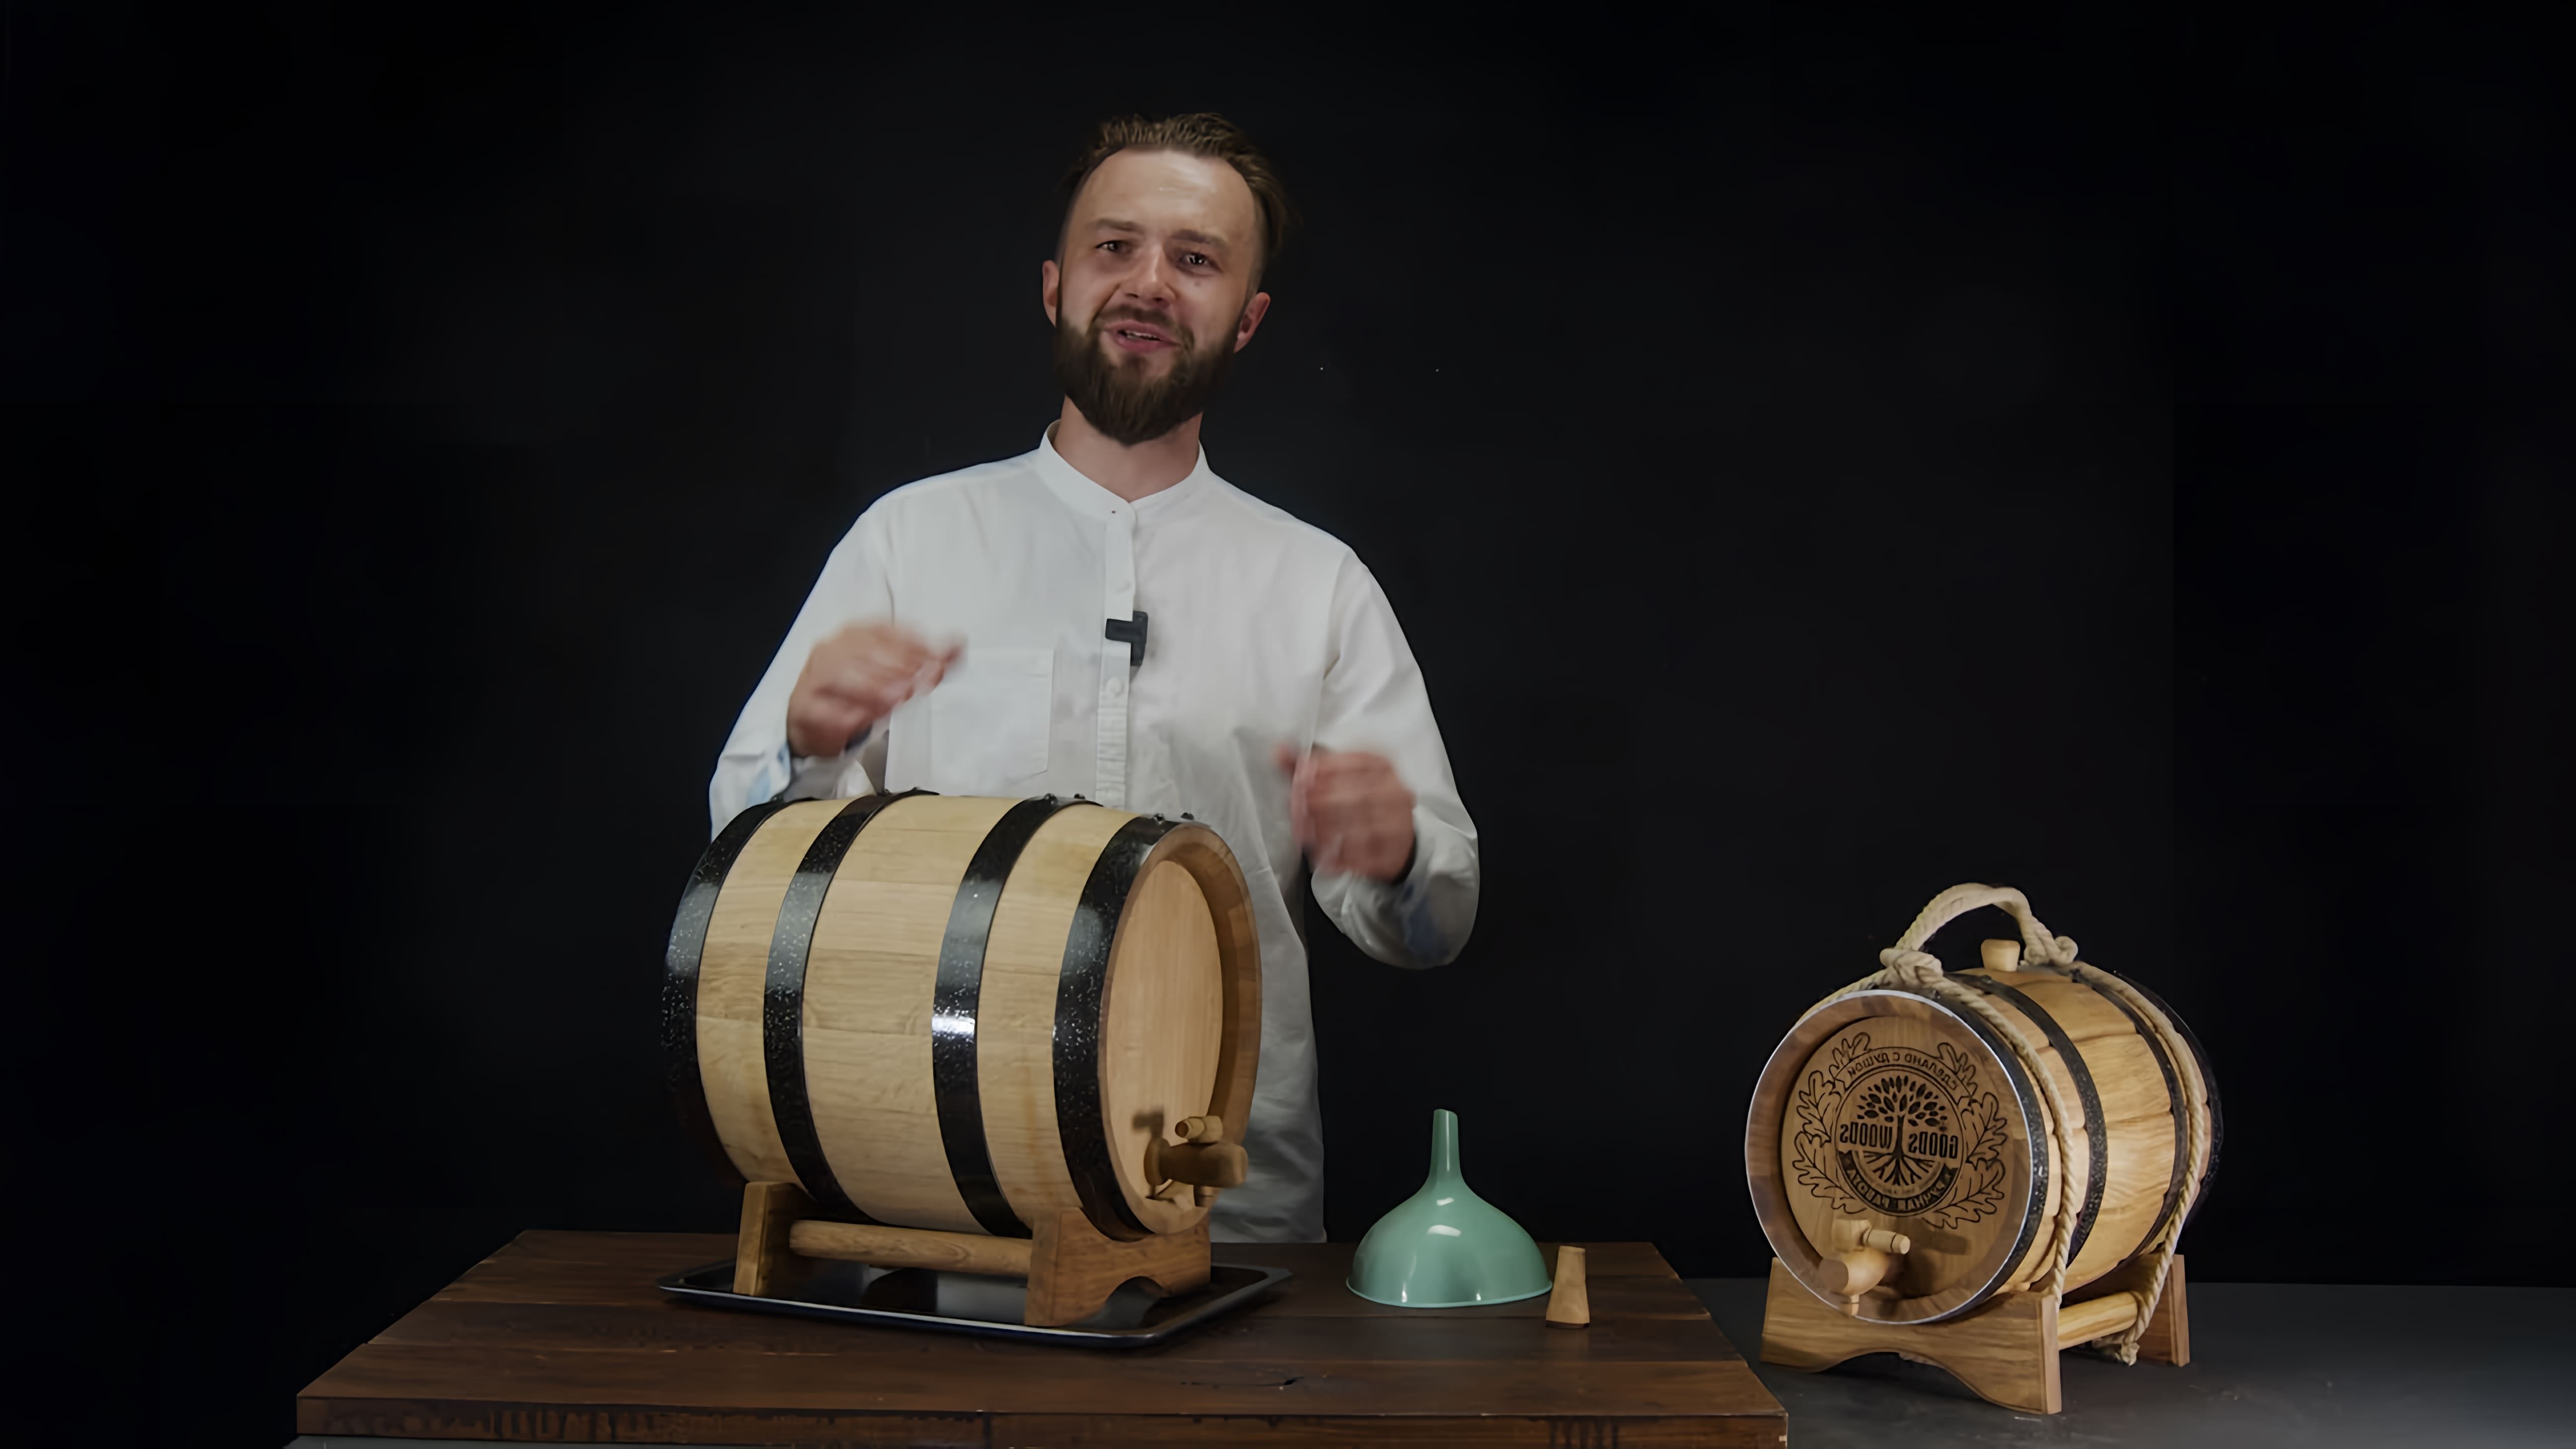 В данном видео представлена инструкция по подготовке дубовой бочки для использования в качестве подарка мужчине